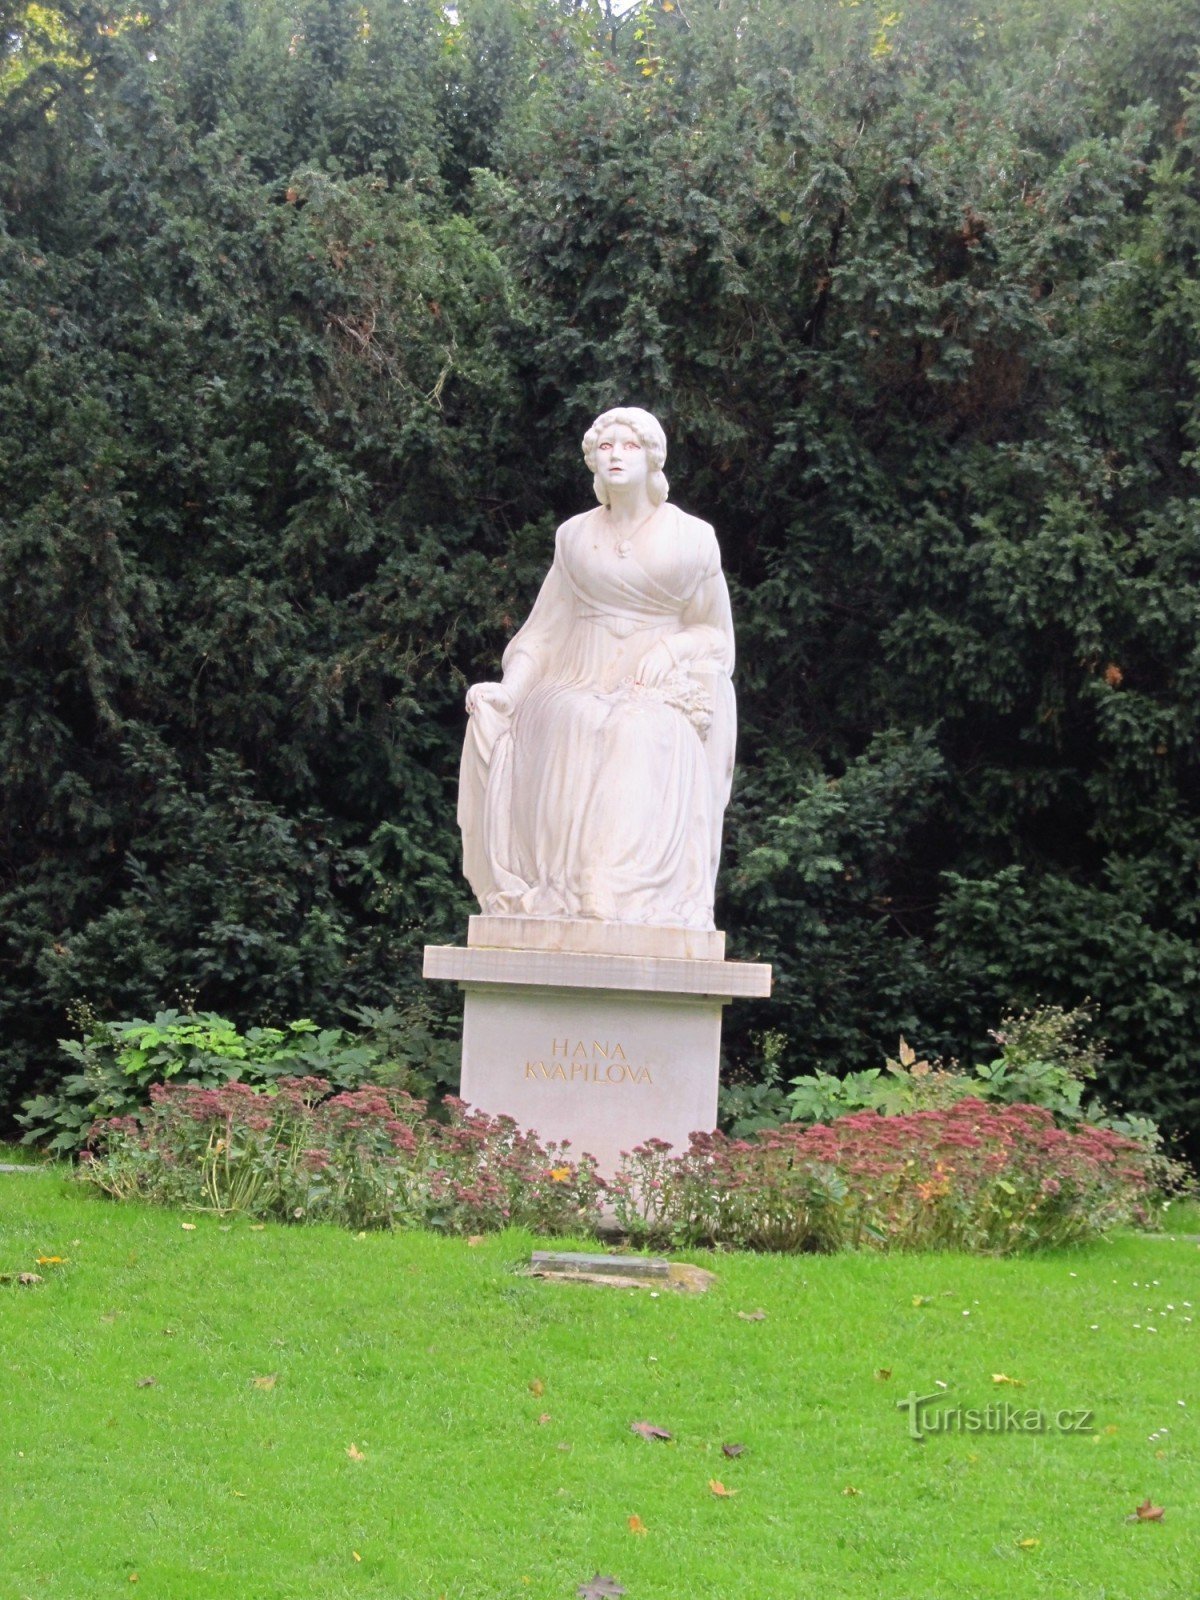 Hana Kvapilovás monument i Kinsky-haven i Prag